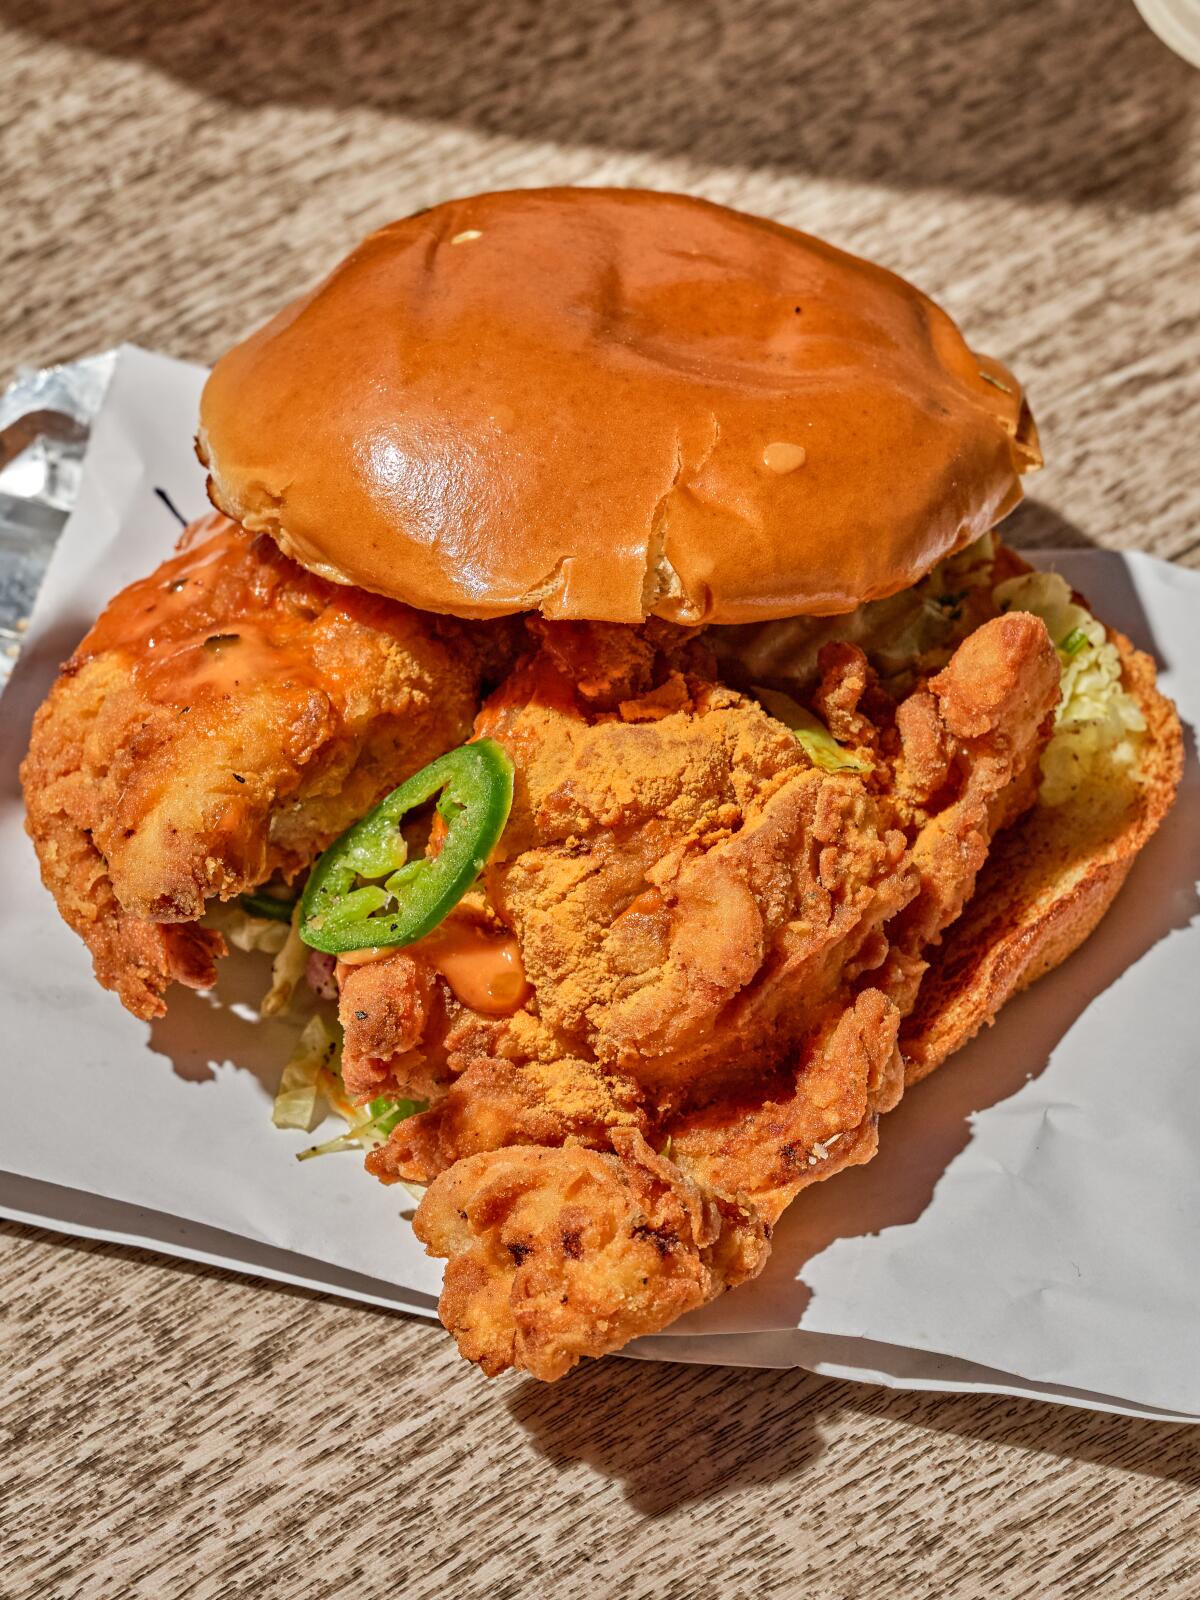 The Ludo Bird dark meat fried chicken sandwich from Staples Center.